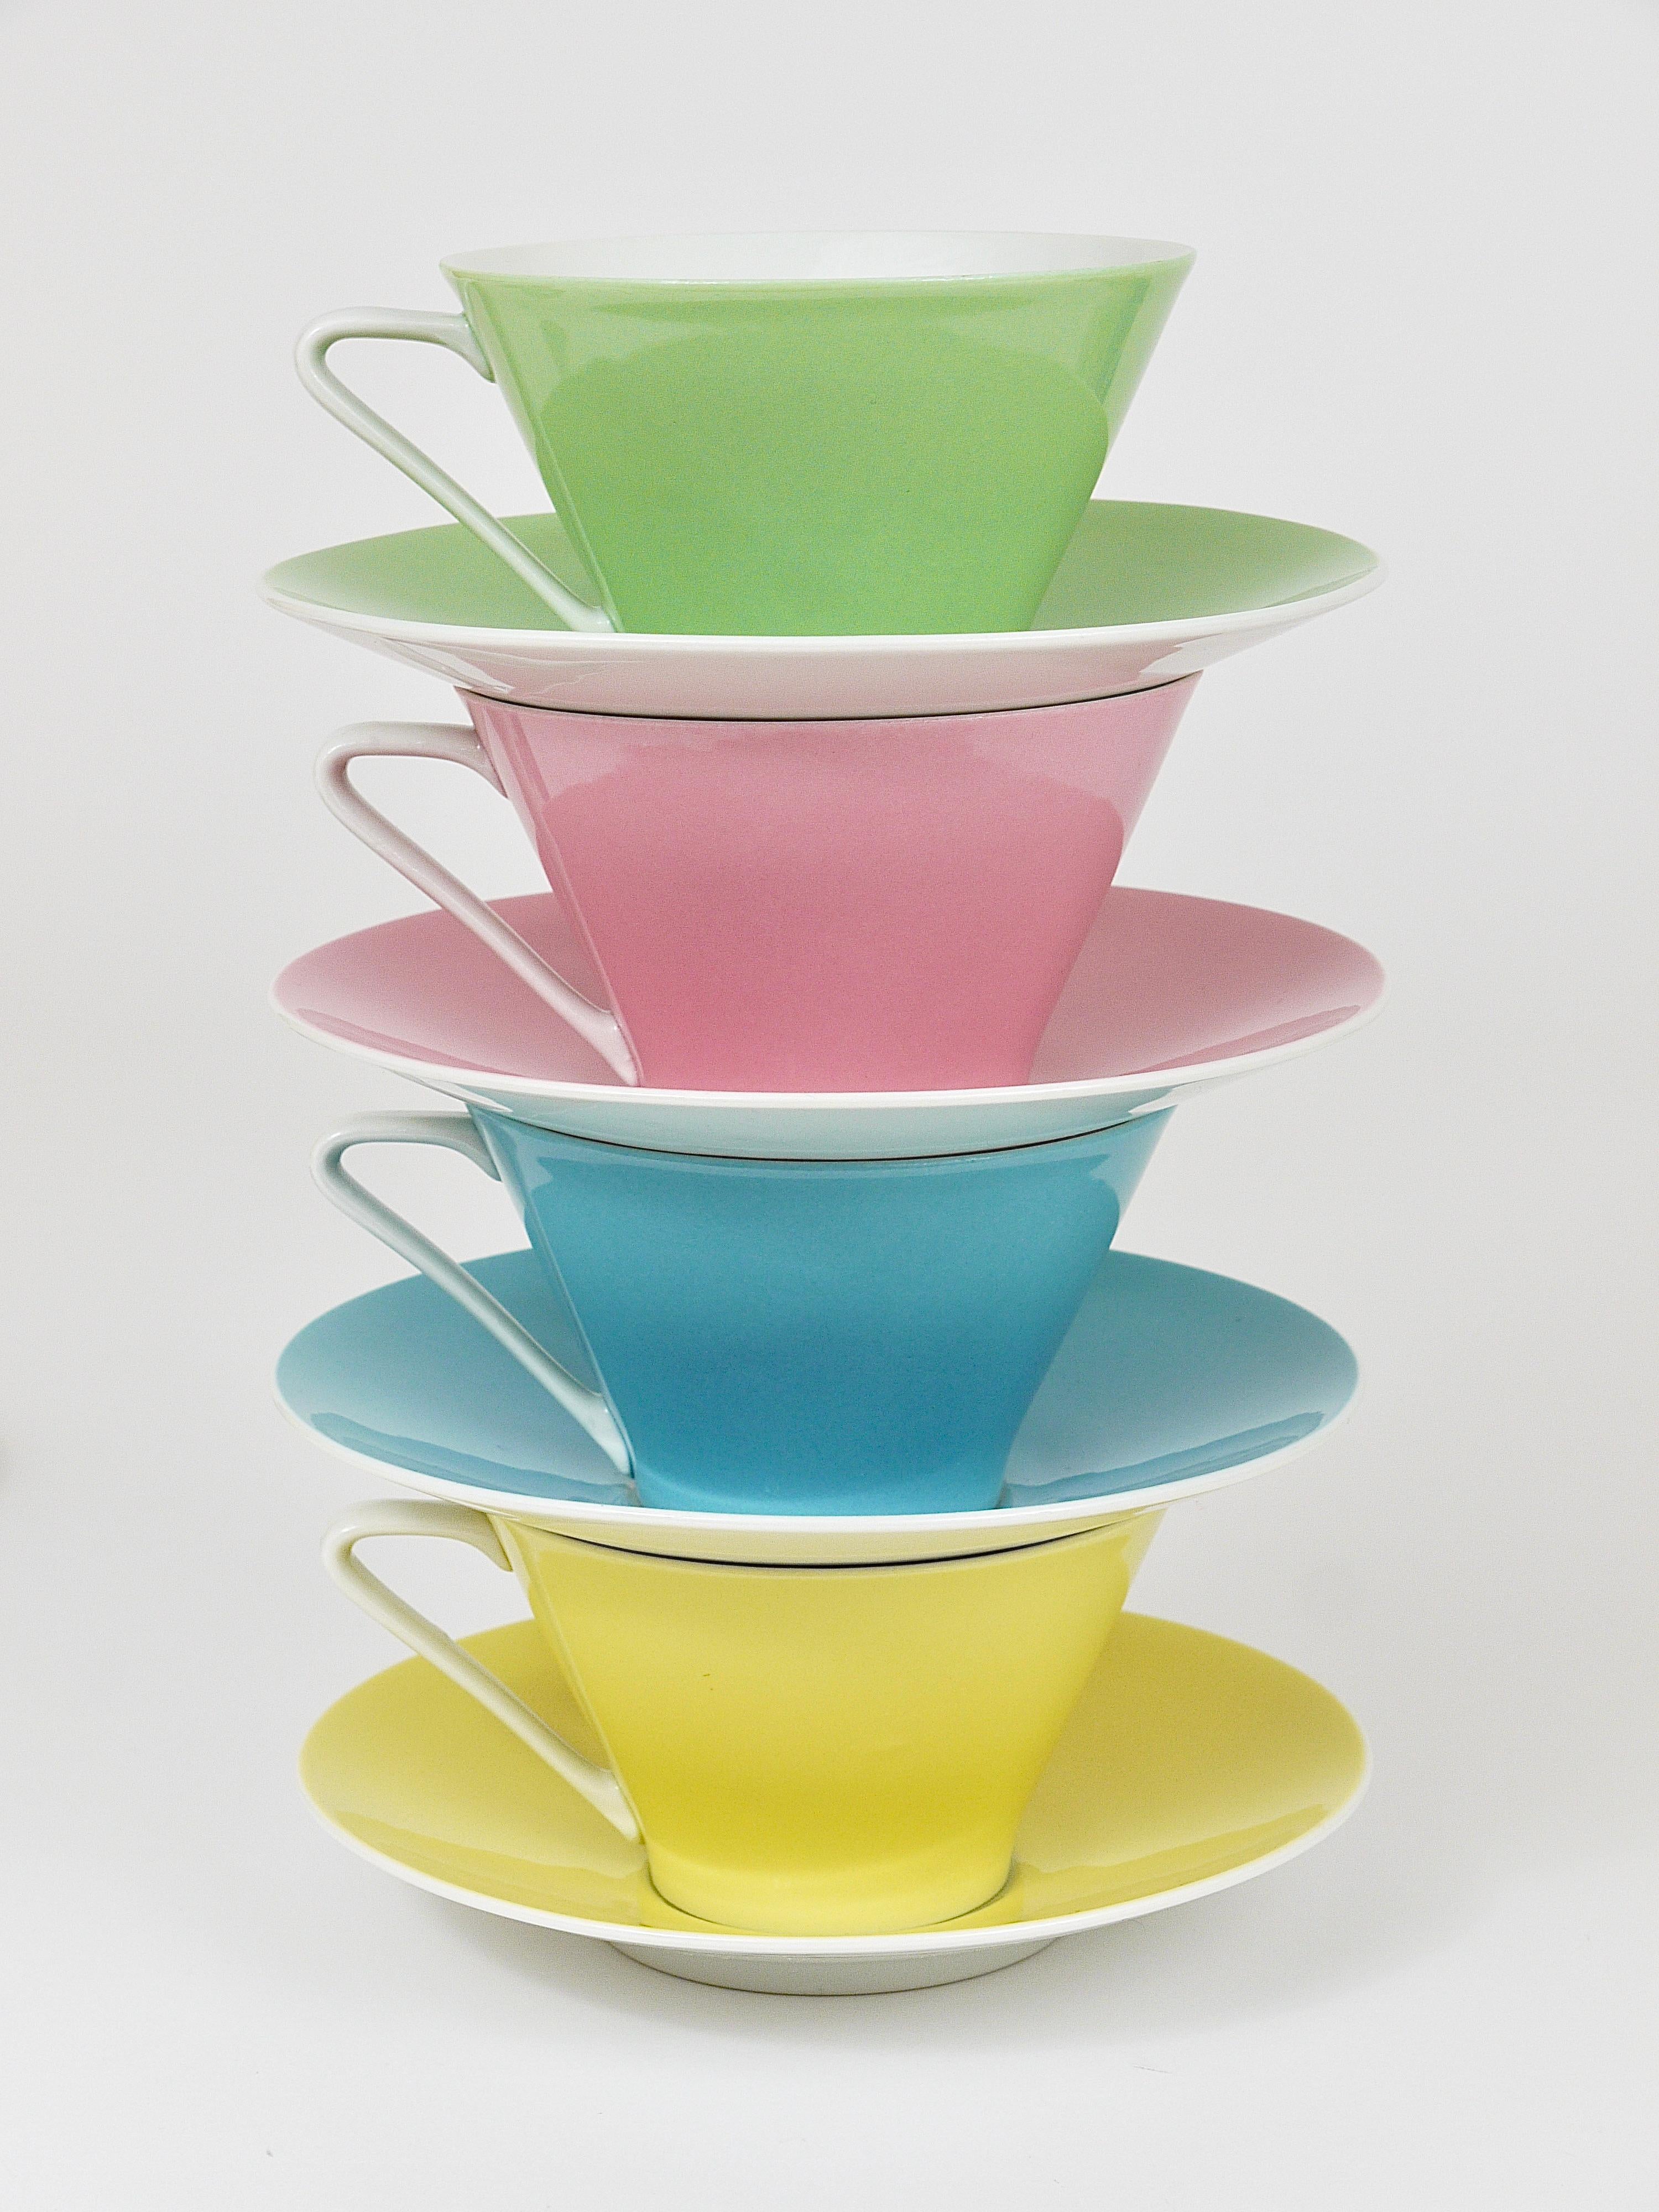 6 Midcentury Pastel Daisy Porcelain Coffee Cups, Lilien, Austria, 1950s For Sale 1